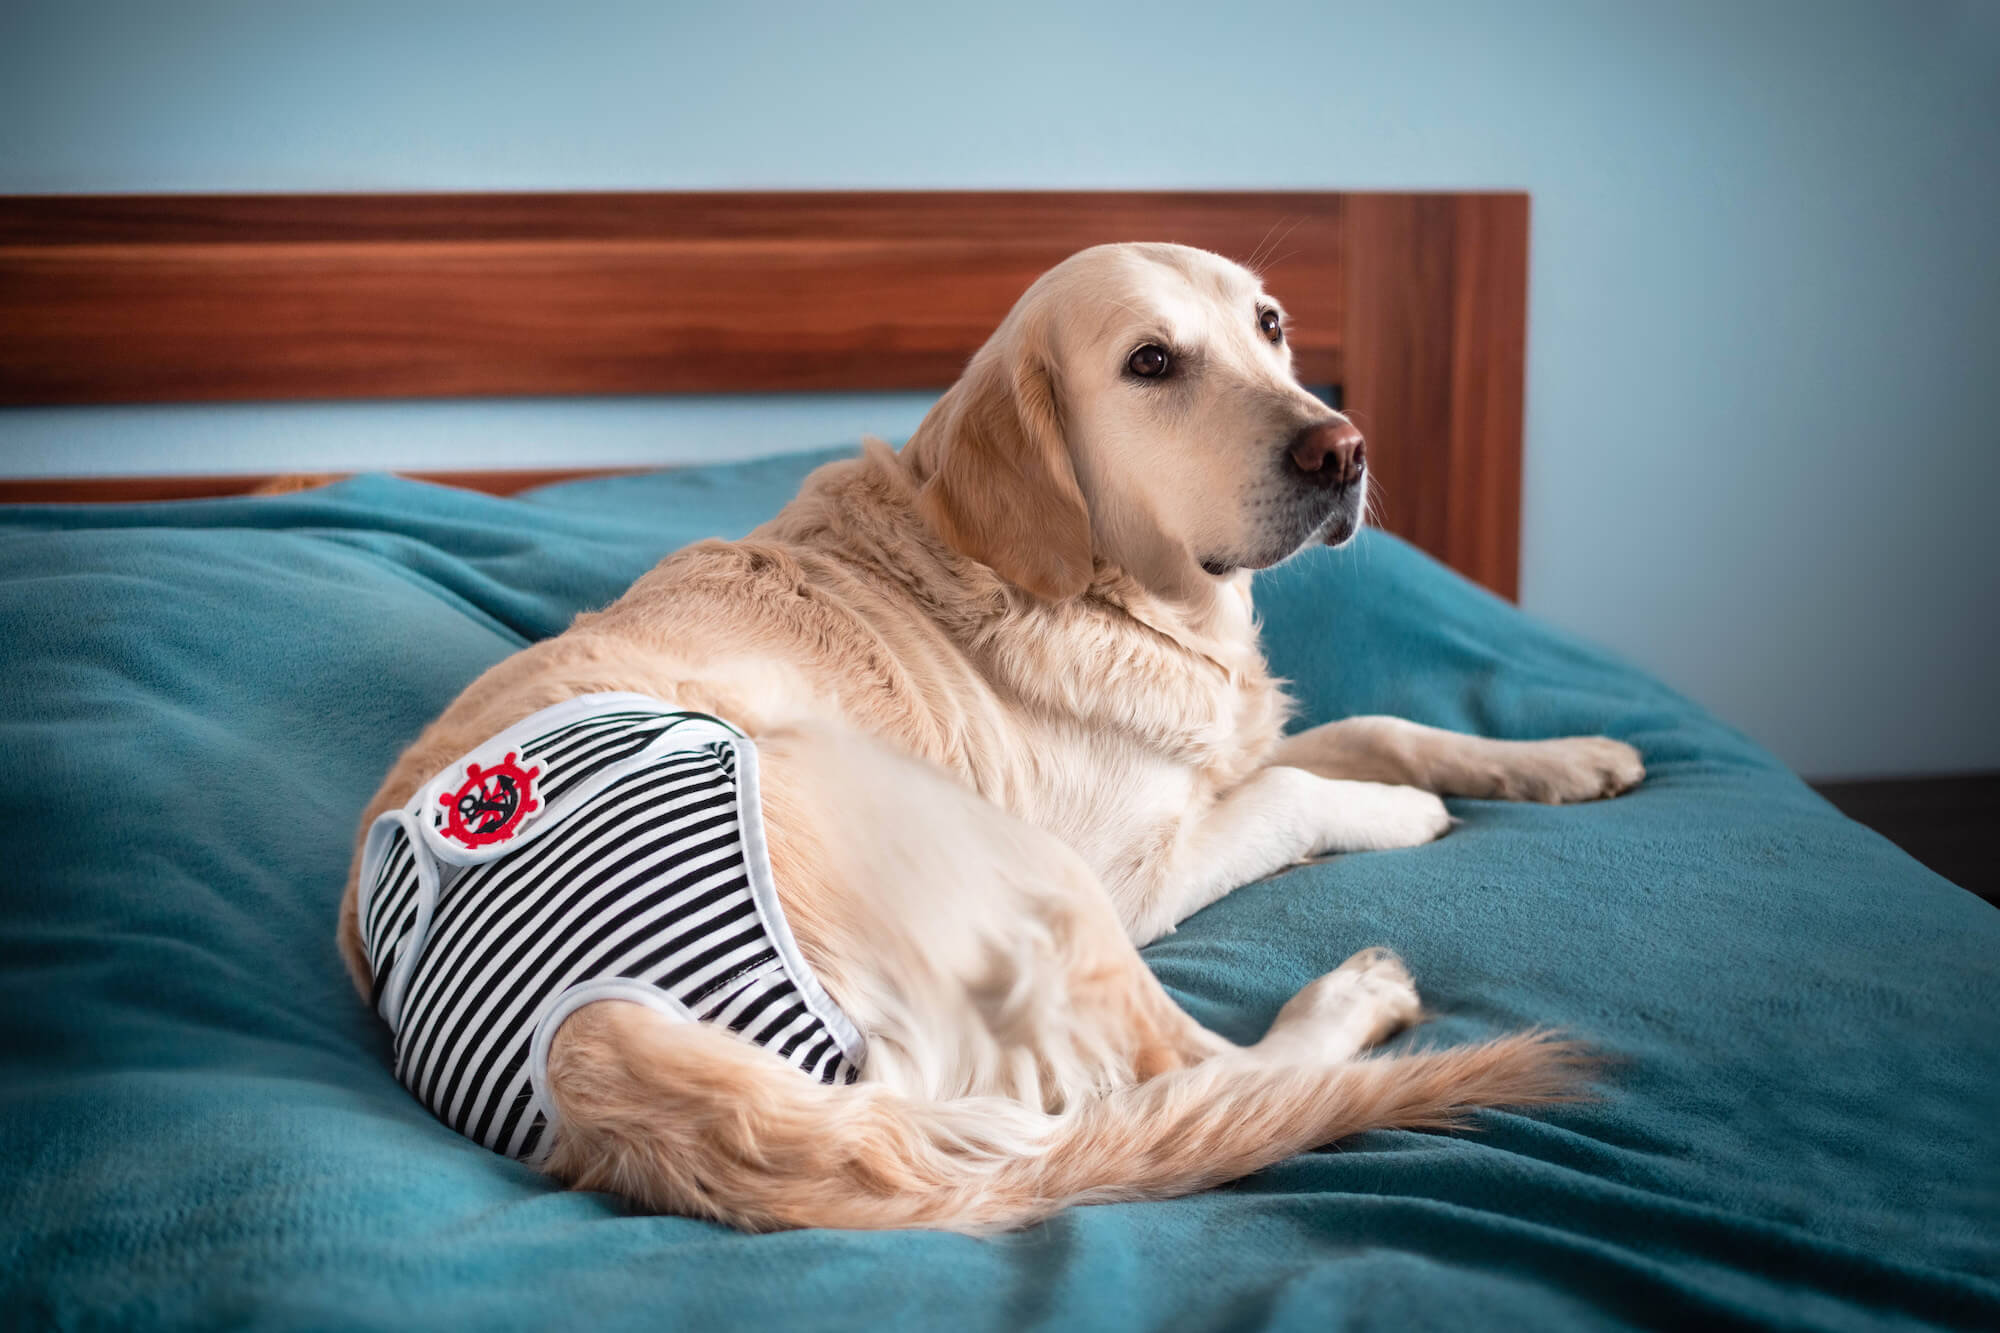 Marine černo-bílé látkové hárací kalhotky pro psa